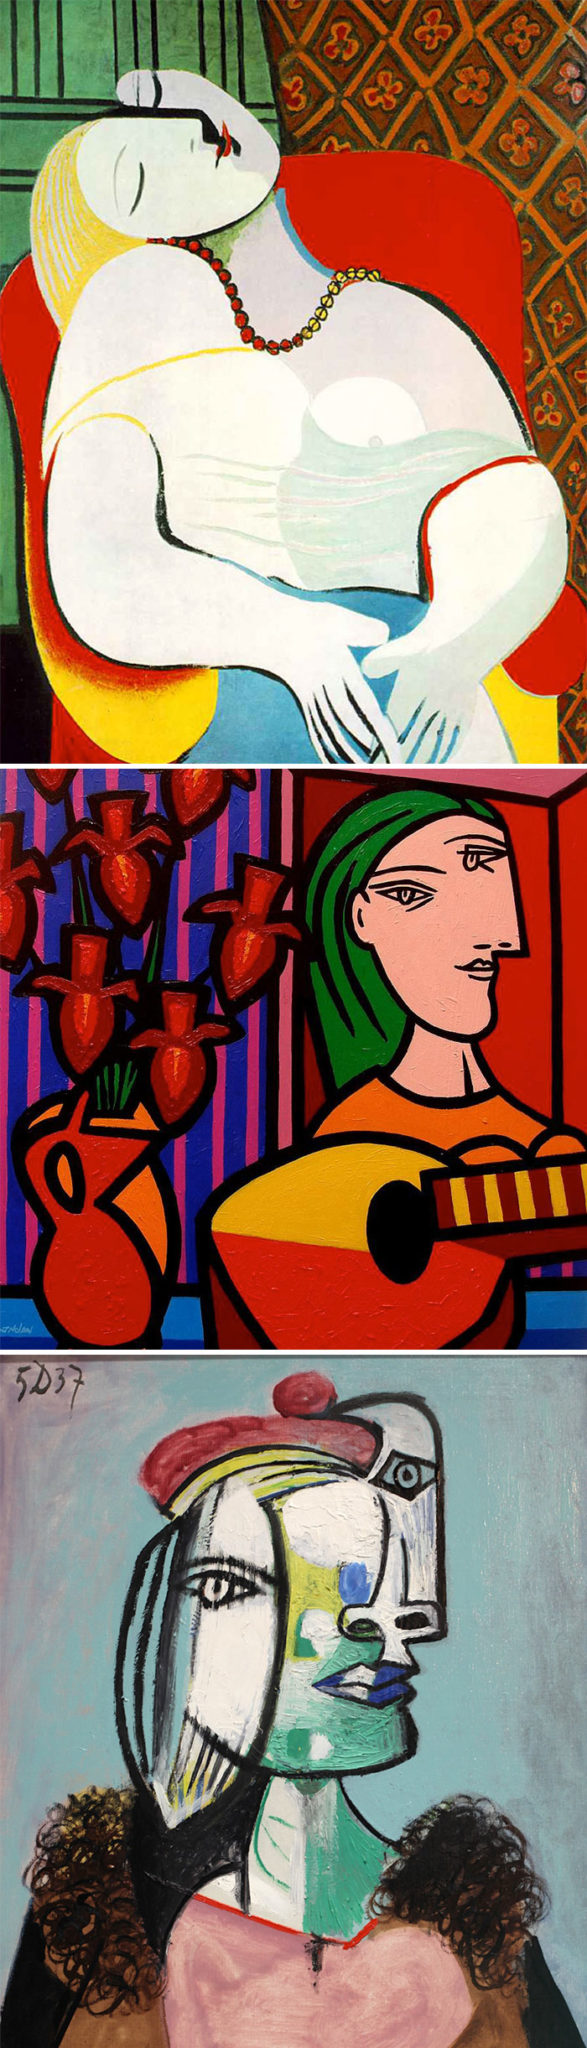 Picasso Jak rozpoznać słynnych malarzy? Skuteczny przewodnik po sztuce z lekkim przymrużeniem oka